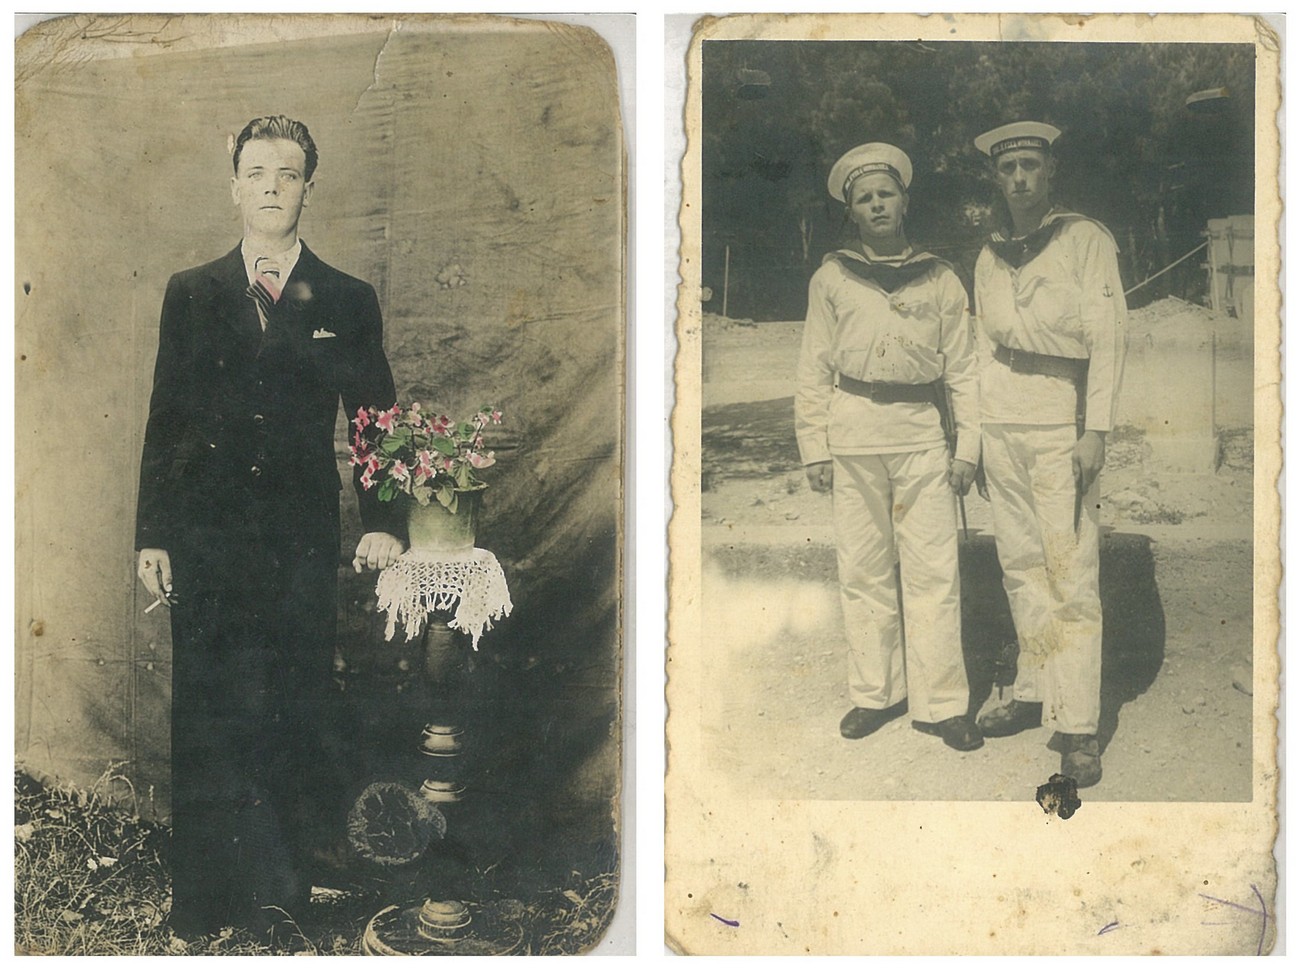 Na levi fotografiji je Franc Čadonič (1919–1942), na desni pa sta levo Jože Čadonič (1917–1942) in desno Marko Čadonič (1917–2000). Franc in Marko sta bila brata, Jože pa njun stric (polbrat njunega očeta). Fotografiji hrani Franc Čadonič. Avtorja fotografij nista znana.